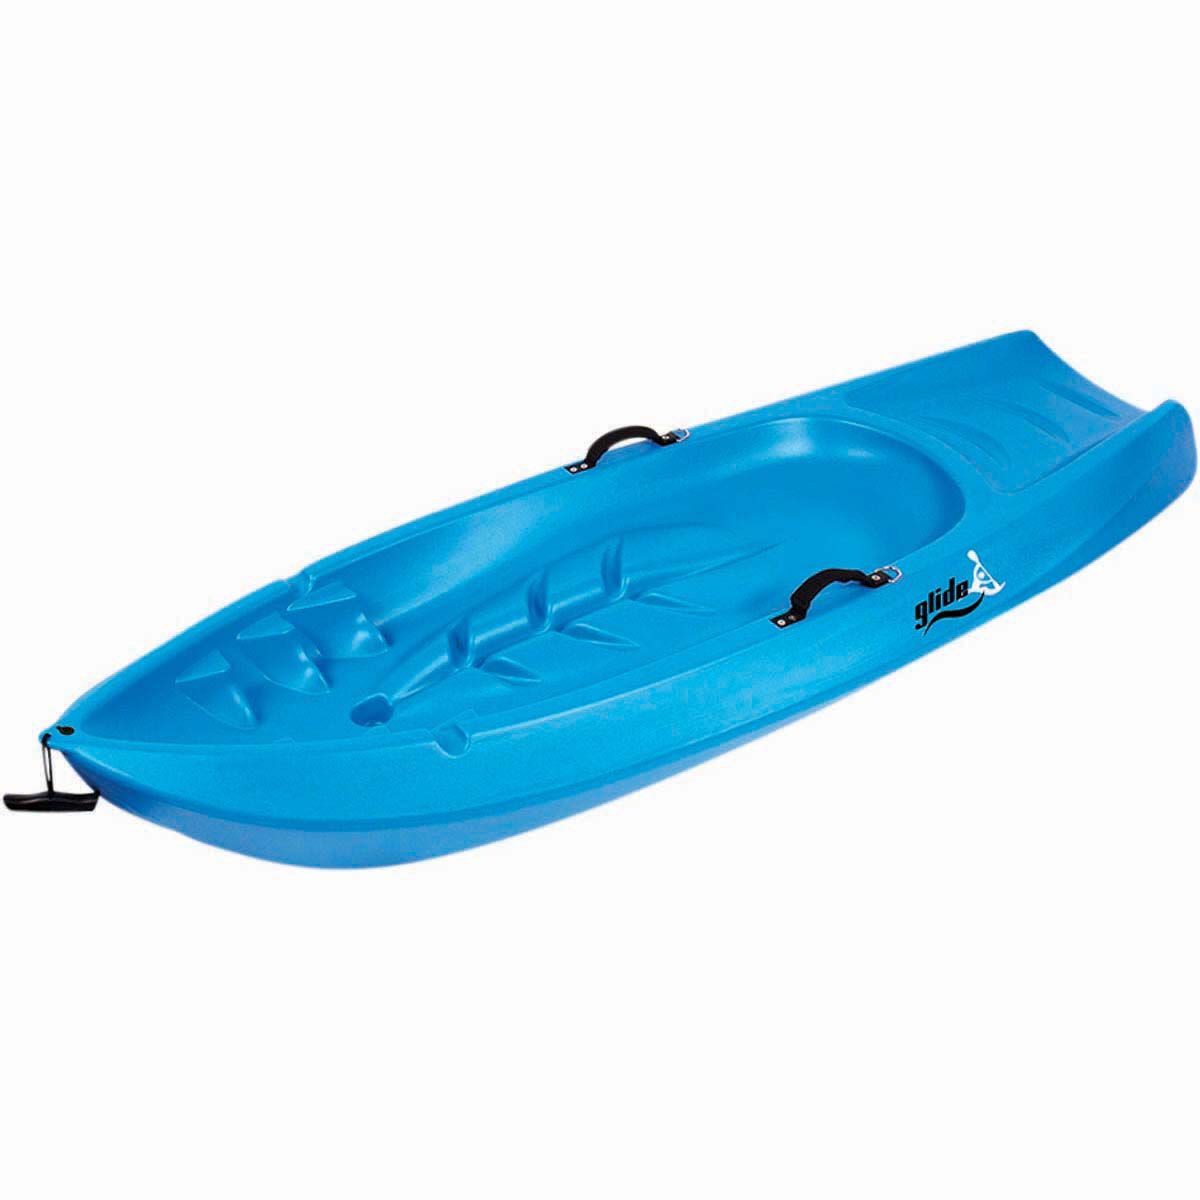 Glide Splasher Junior Kayak Blue